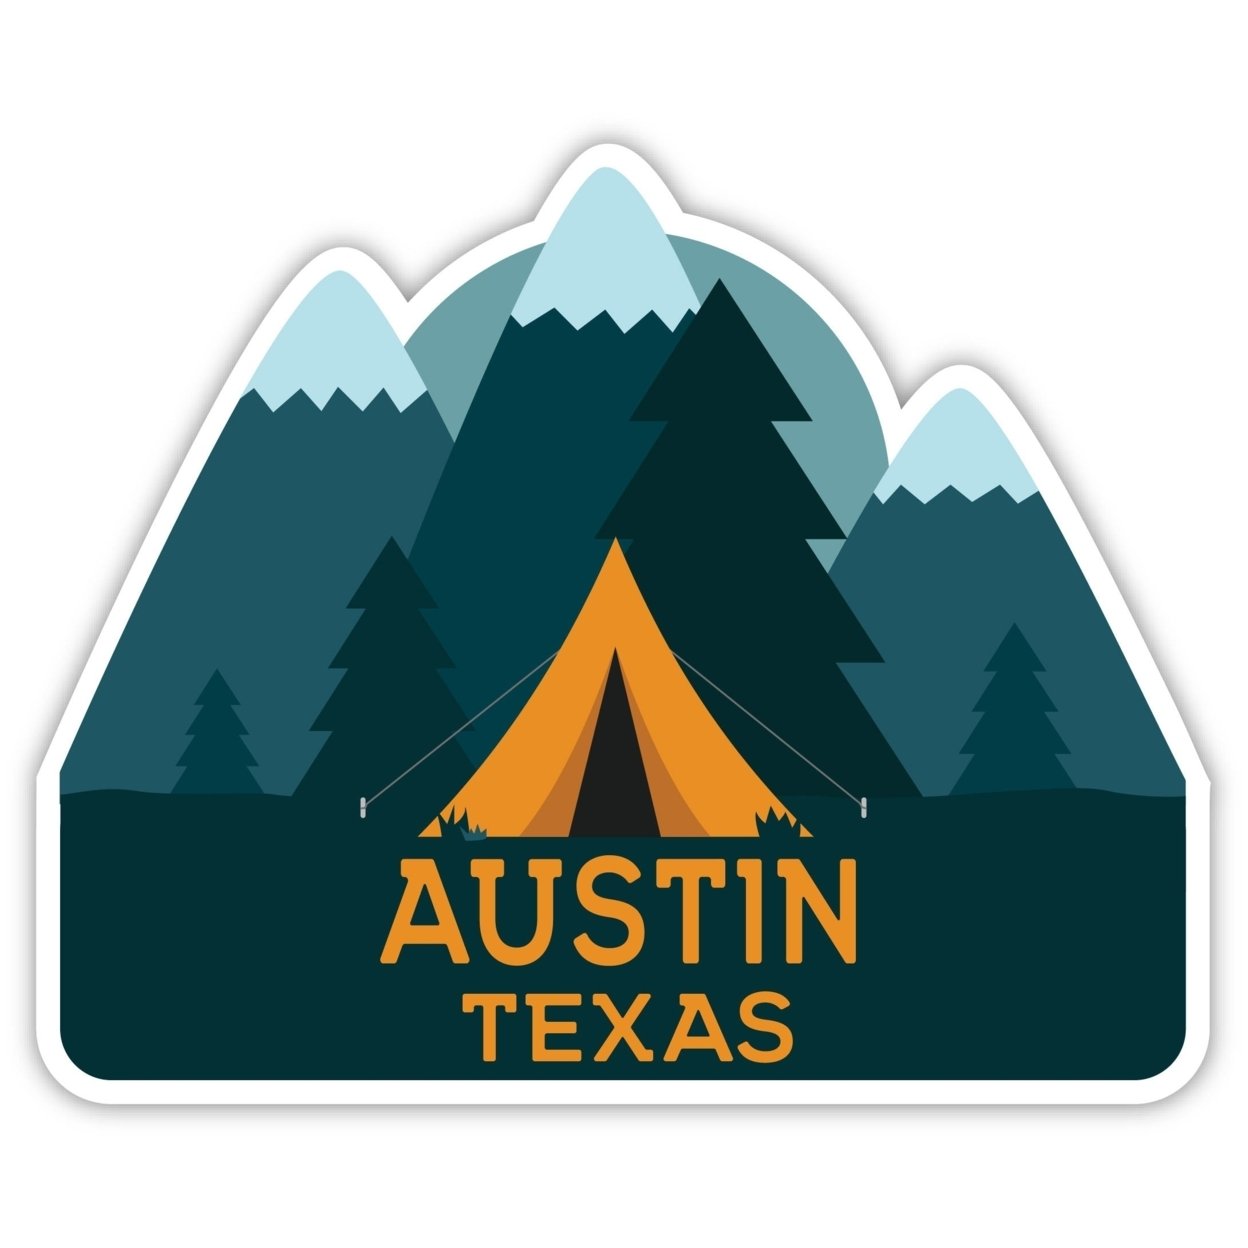 Austin Texas Souvenir Decorative Stickers (Choose Theme And Size) - Single Unit, 6-Inch, Tent